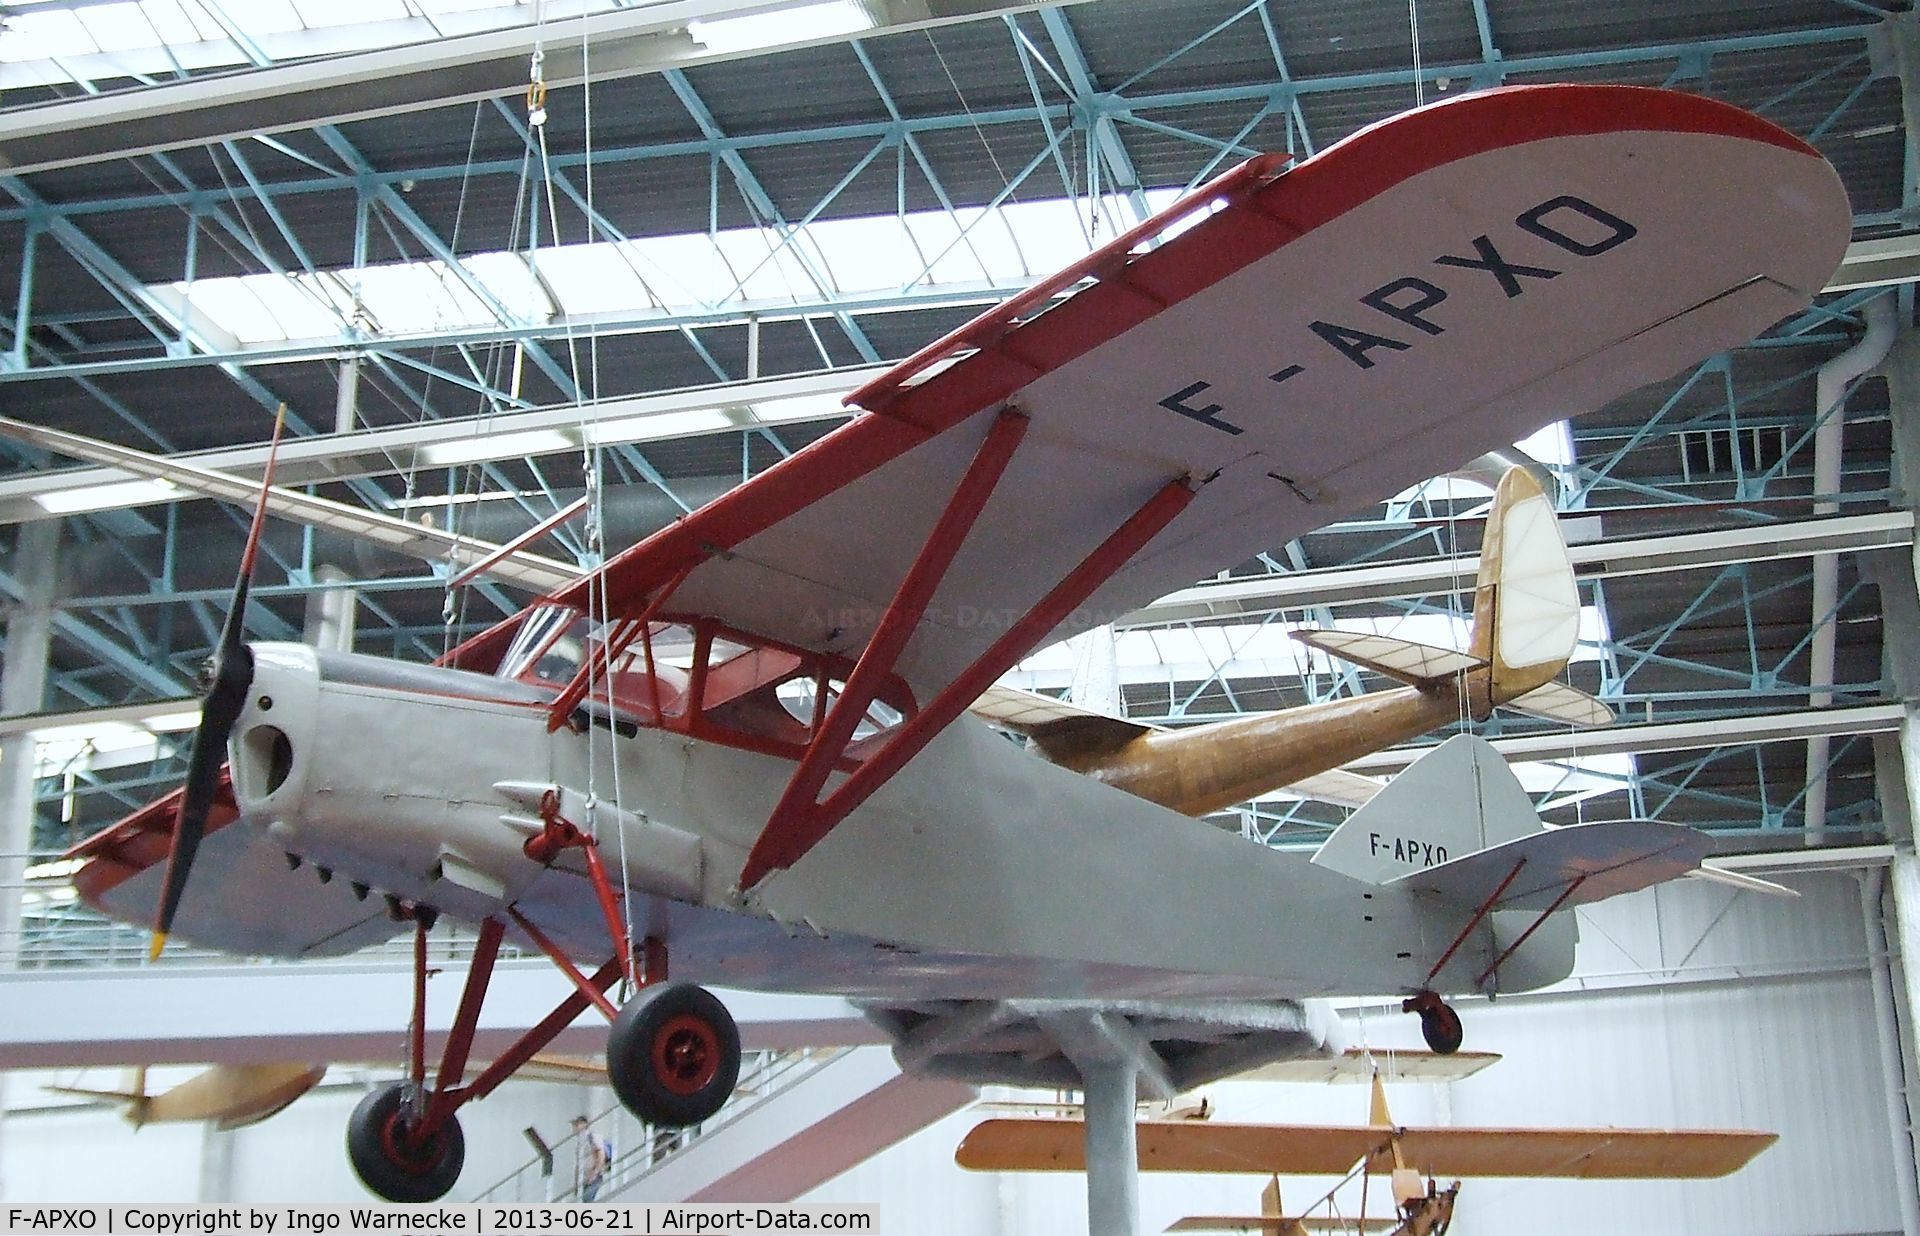 F-APXO, 1937 Potez 437 C/N 3588/11, Potez 437 at the Musee de l'Air, Paris/Le Bourget